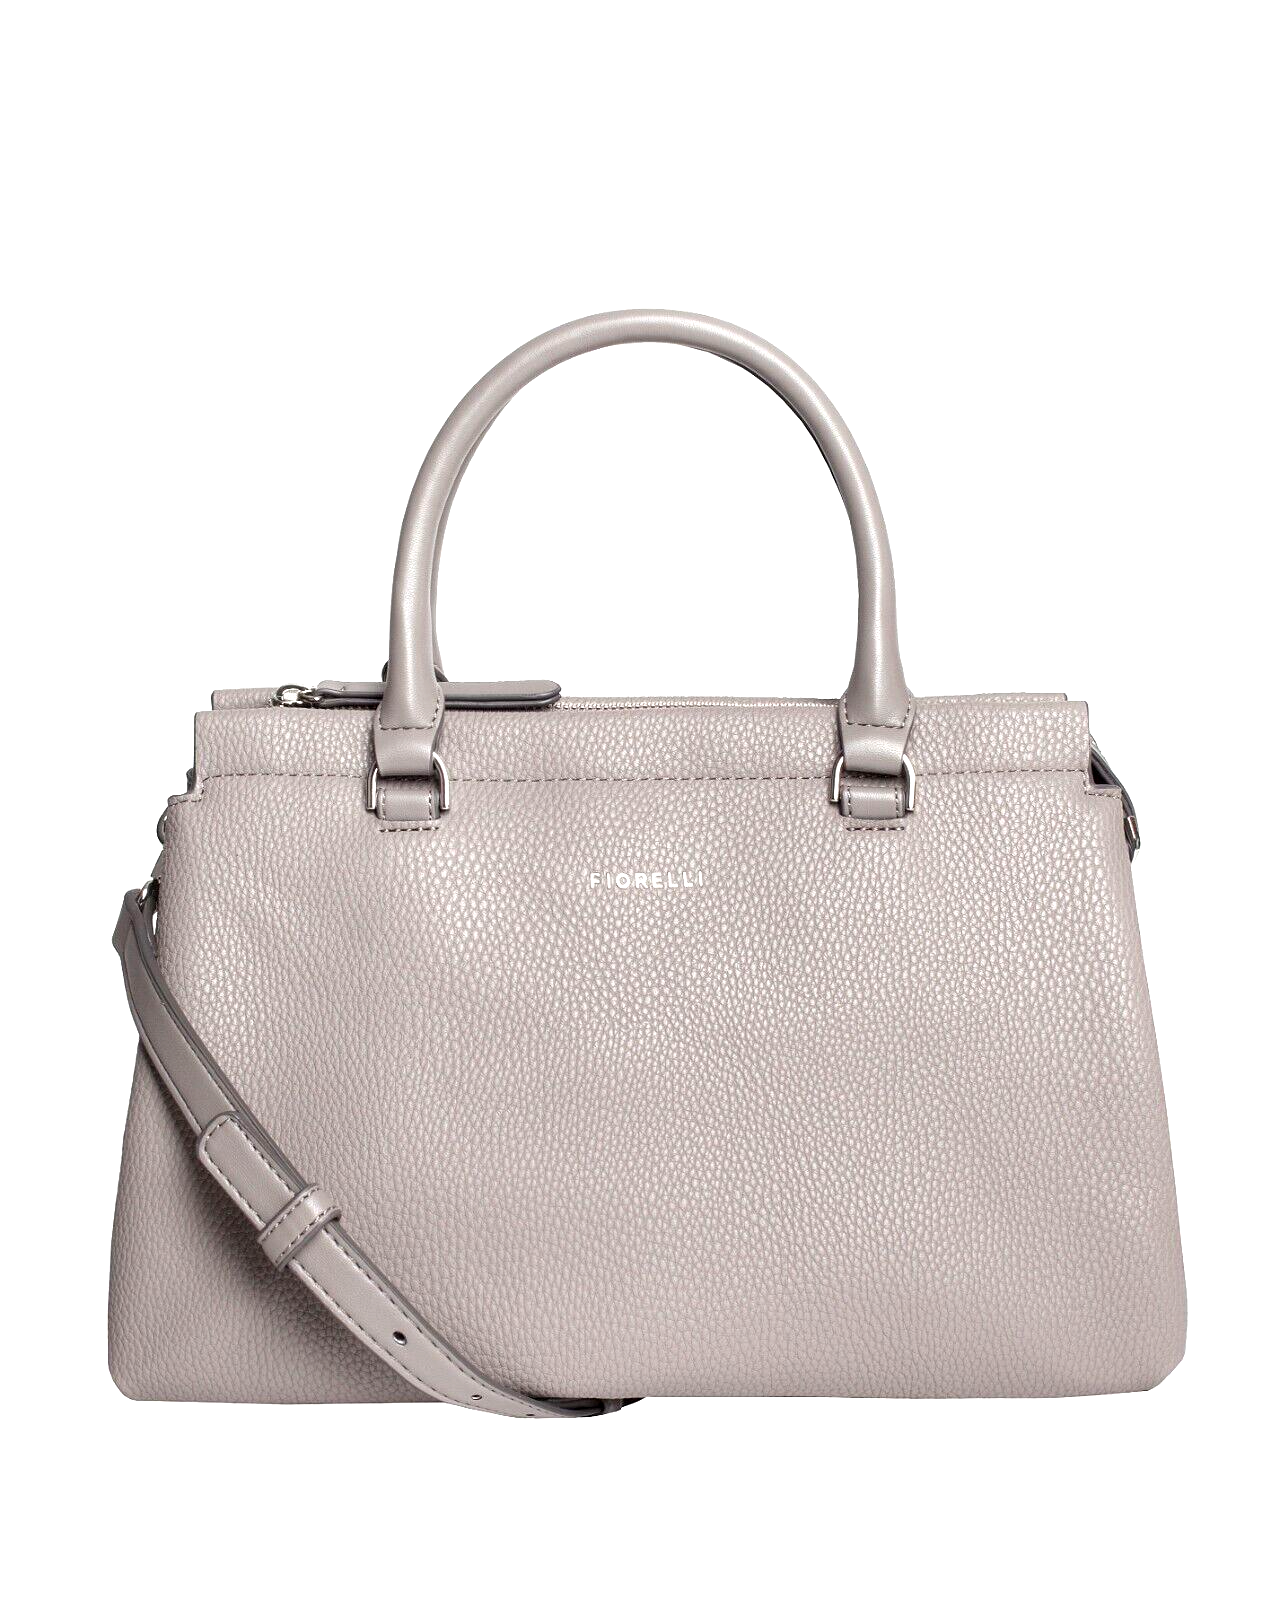 Fiorelli Colette Steel Grab Handbag Medium RRP £65